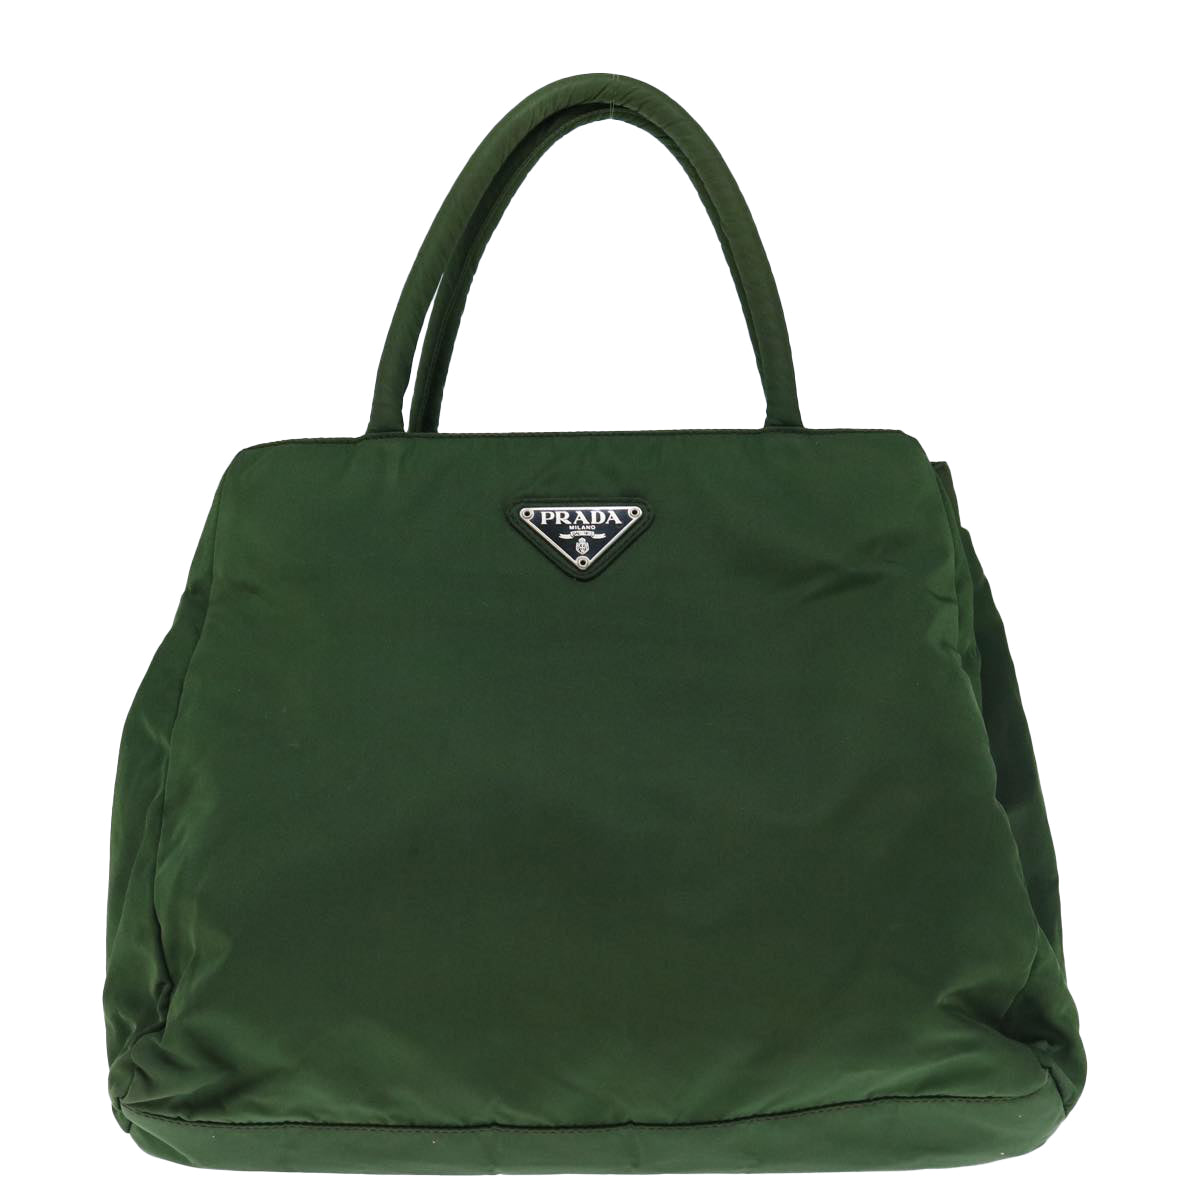 PRADA Hand Bag Nylon Khaki Auth 63383 - 0